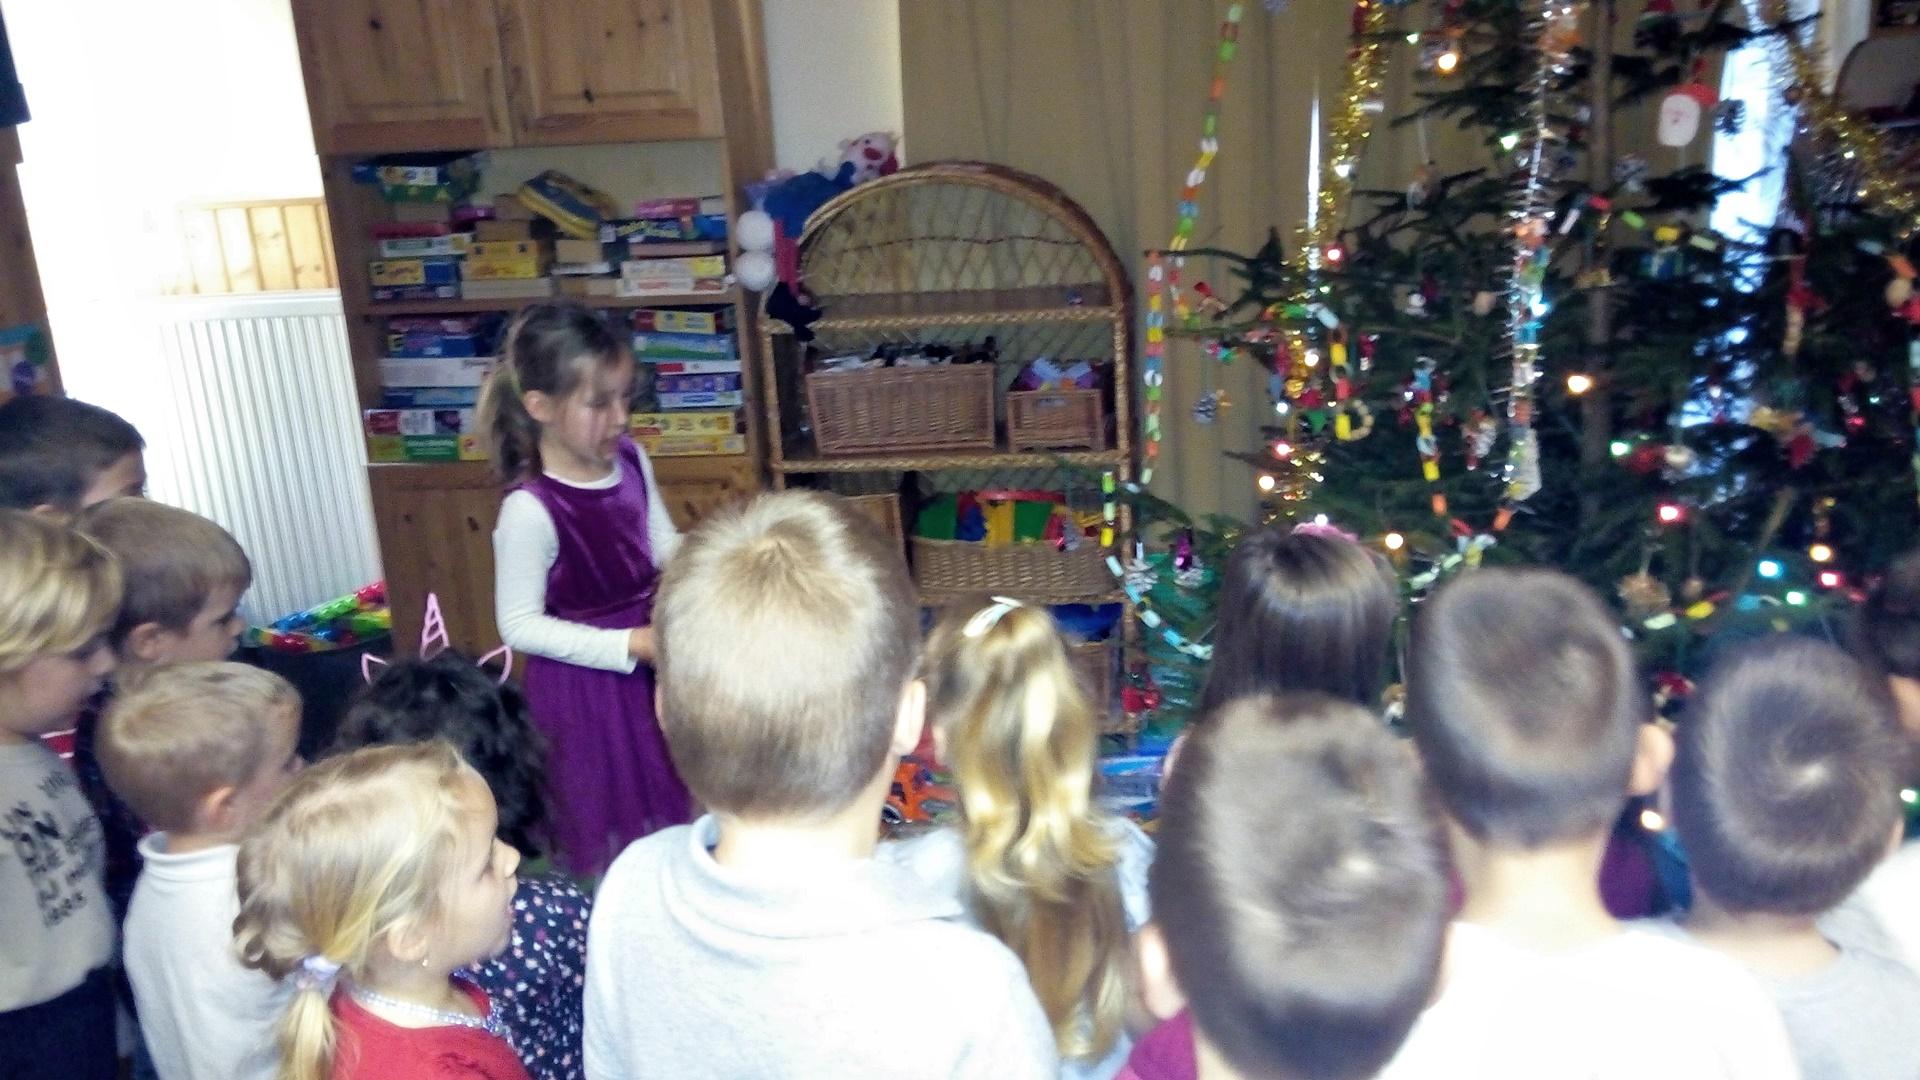 December végén mindkét csoportunkban karácsonyi ünnepélyt tartottunk. Az ünnepi hangulatot a csoportszoba feldíszítésével, közös énekléssel, verseléssel, karácsonyi dallamok teremtettük meg. Az ünnep alkalmából karácsonyfával és új játékokkal leptük meg óvodásainkat. A délelőttöt ünnepi ebéddel zártuk.